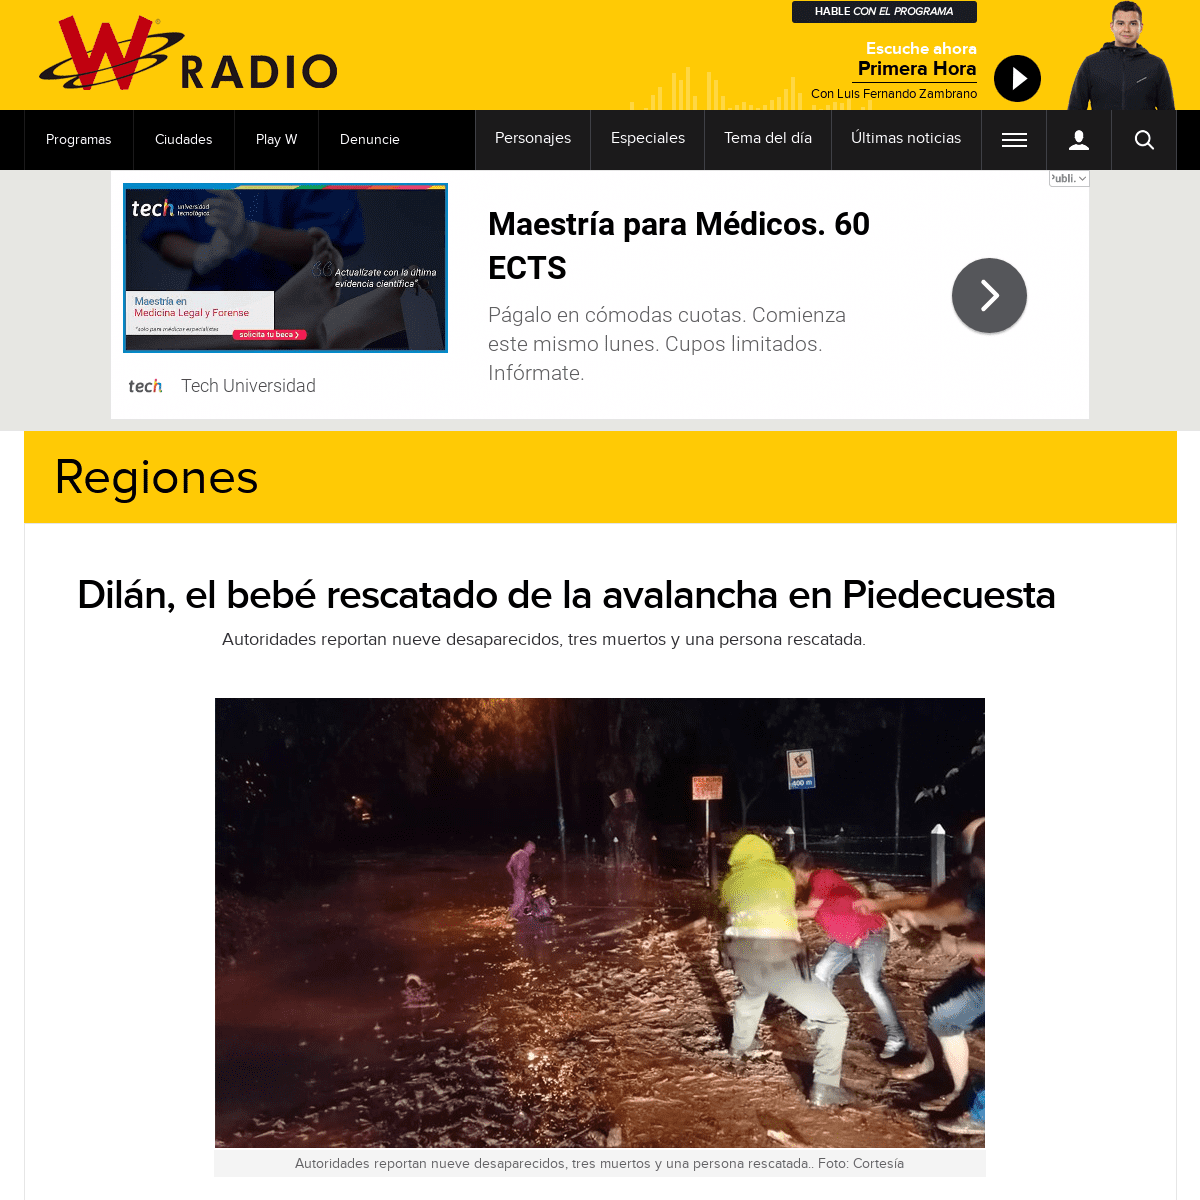 A complete backup of www.wradio.com.co/noticias/regionales/dilan-el-bebe-rescatado-de-la-avalancha-en-piedecuesta/20200226/nota/